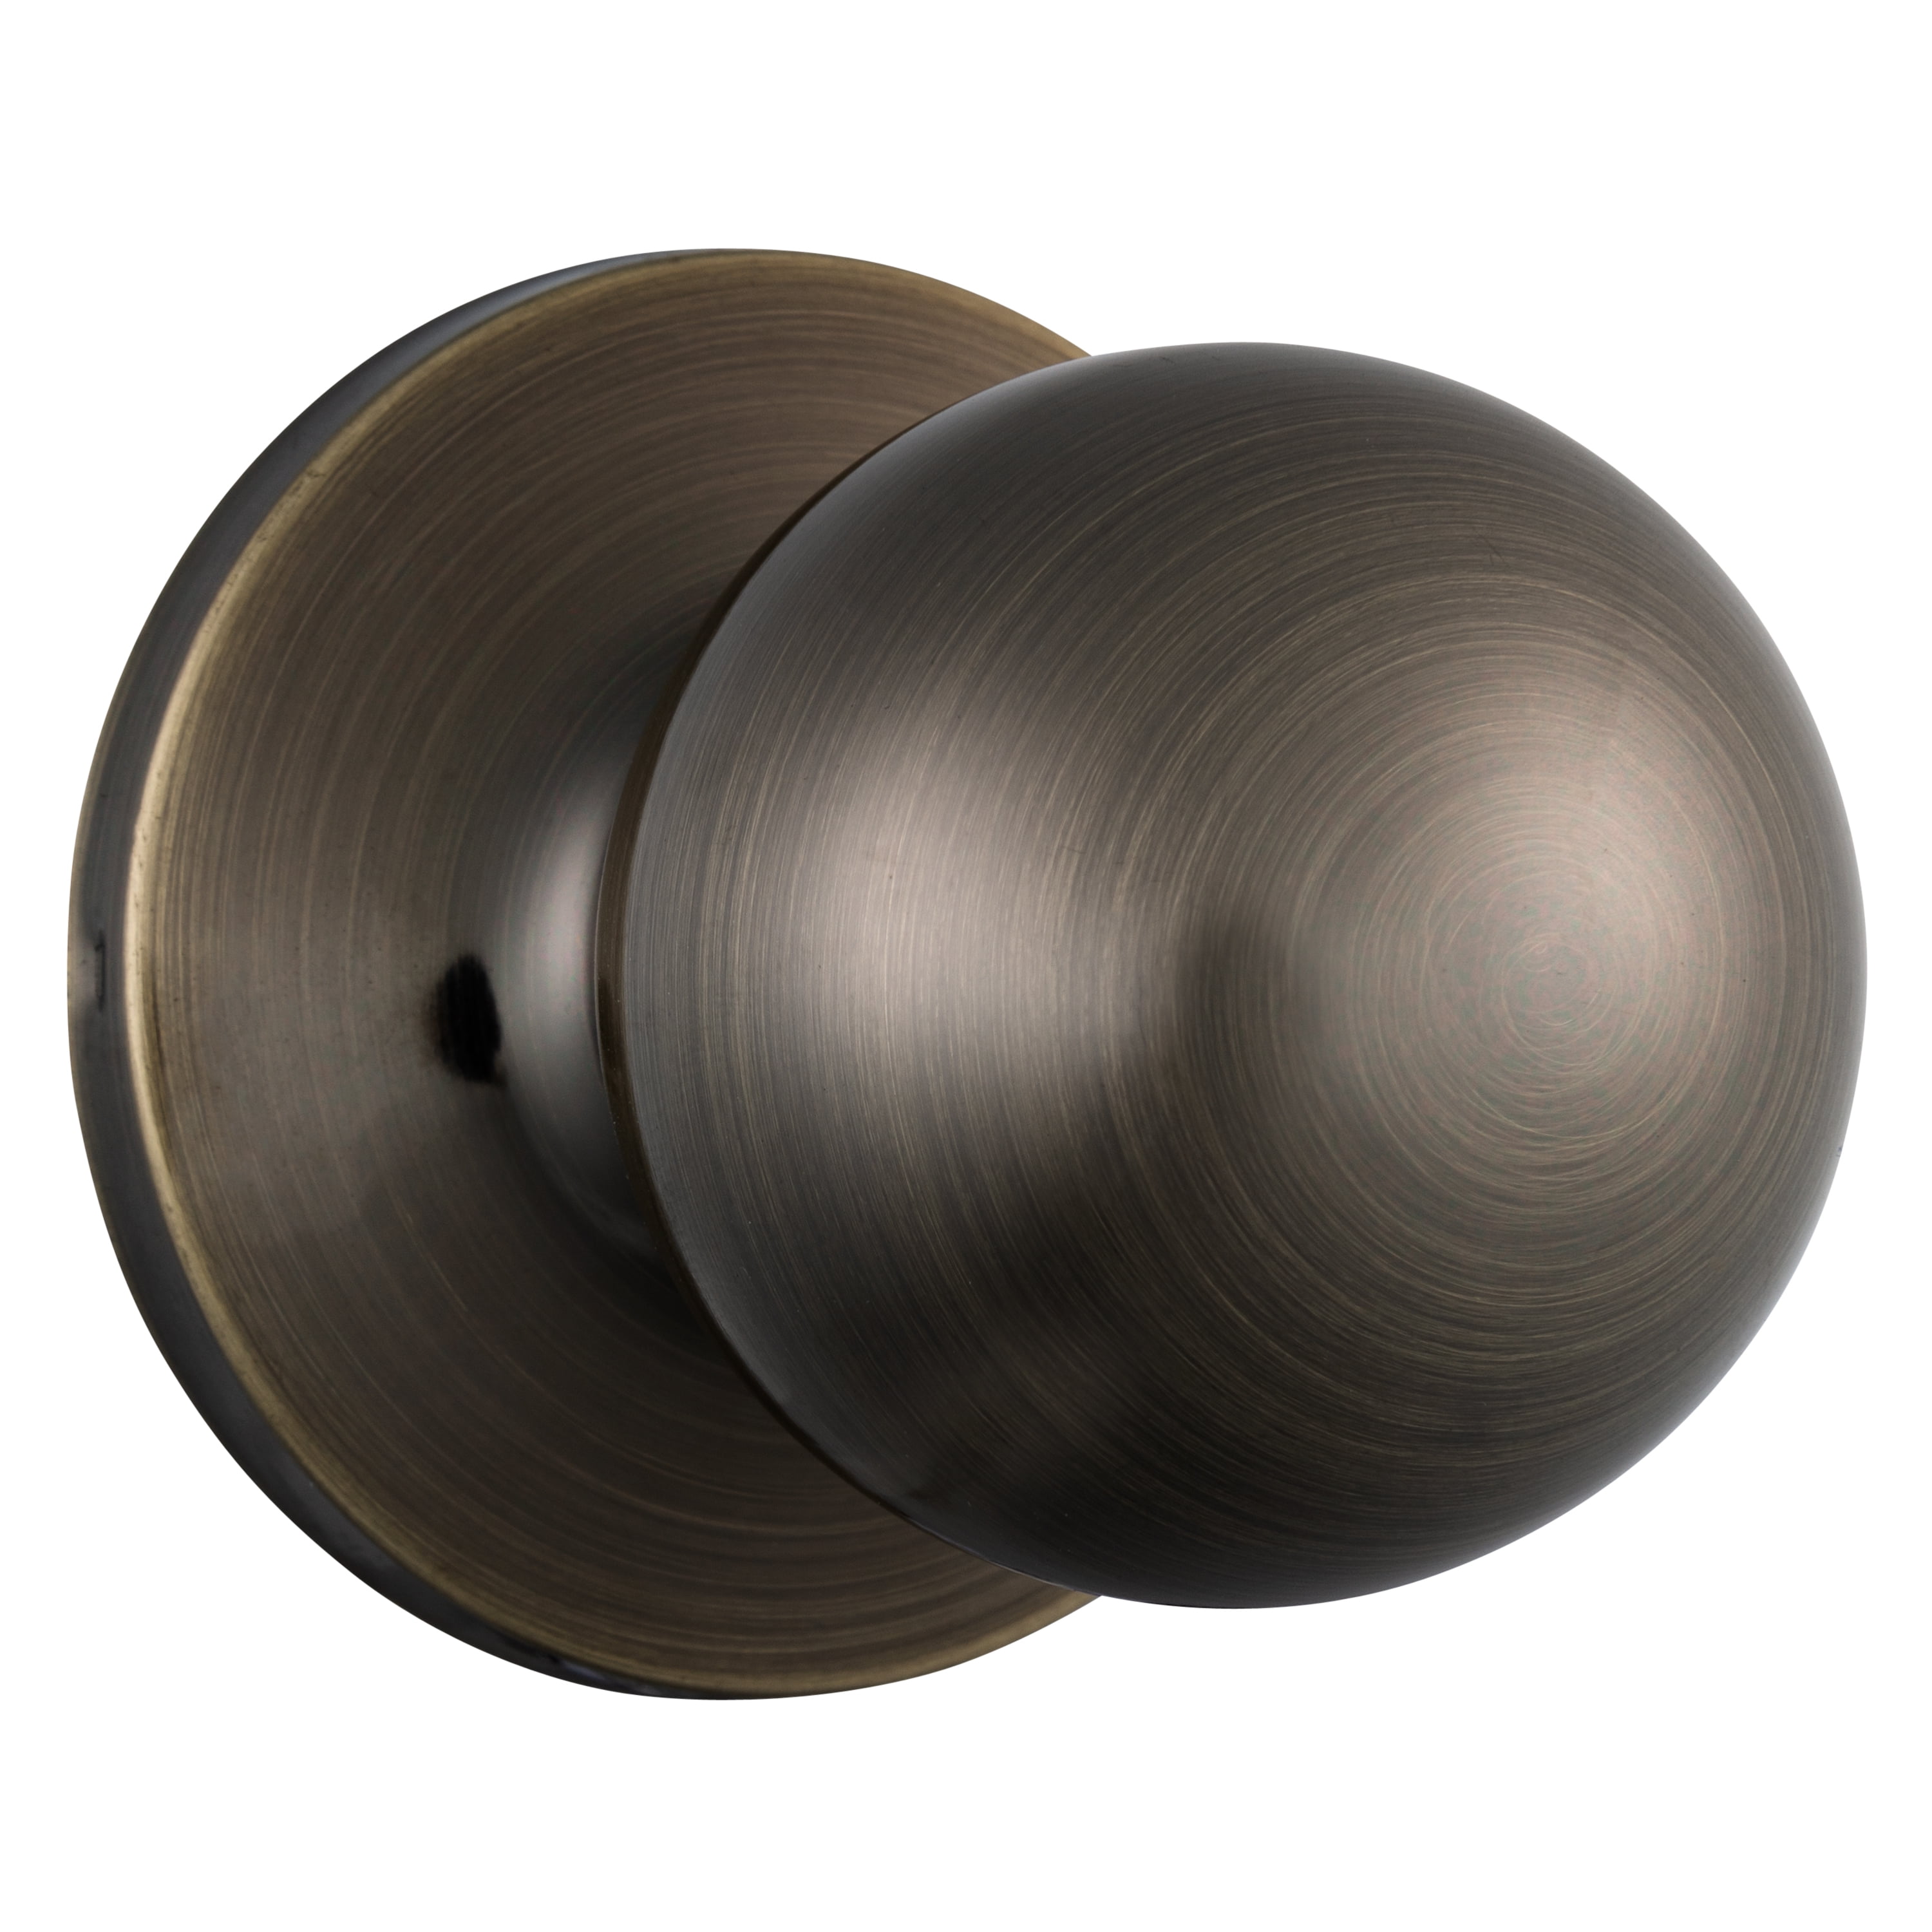 Brinks Interior Non-Locking Passage Ball Doorknob, Antique Brass Finish